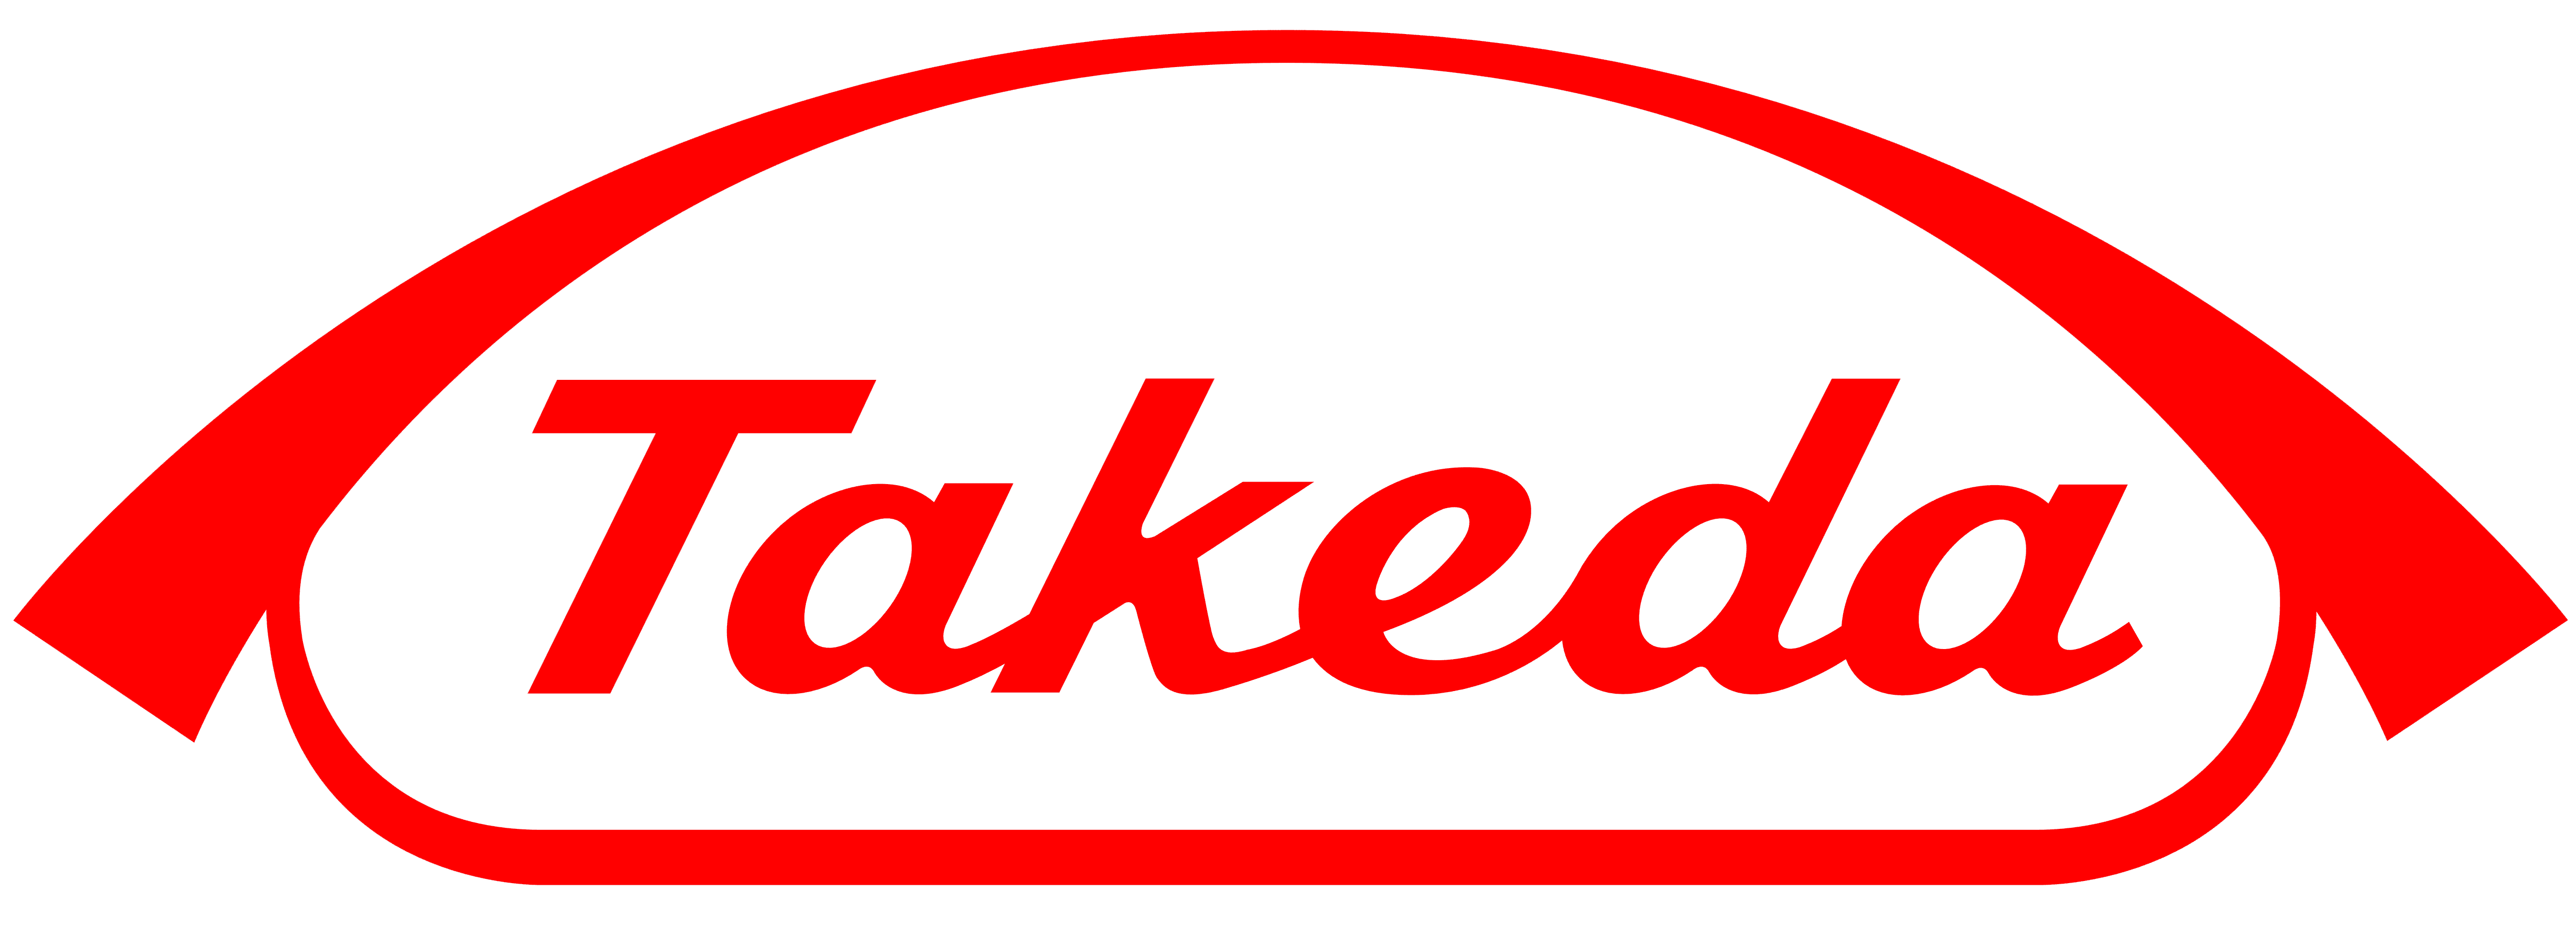 imagem do logo da takeda